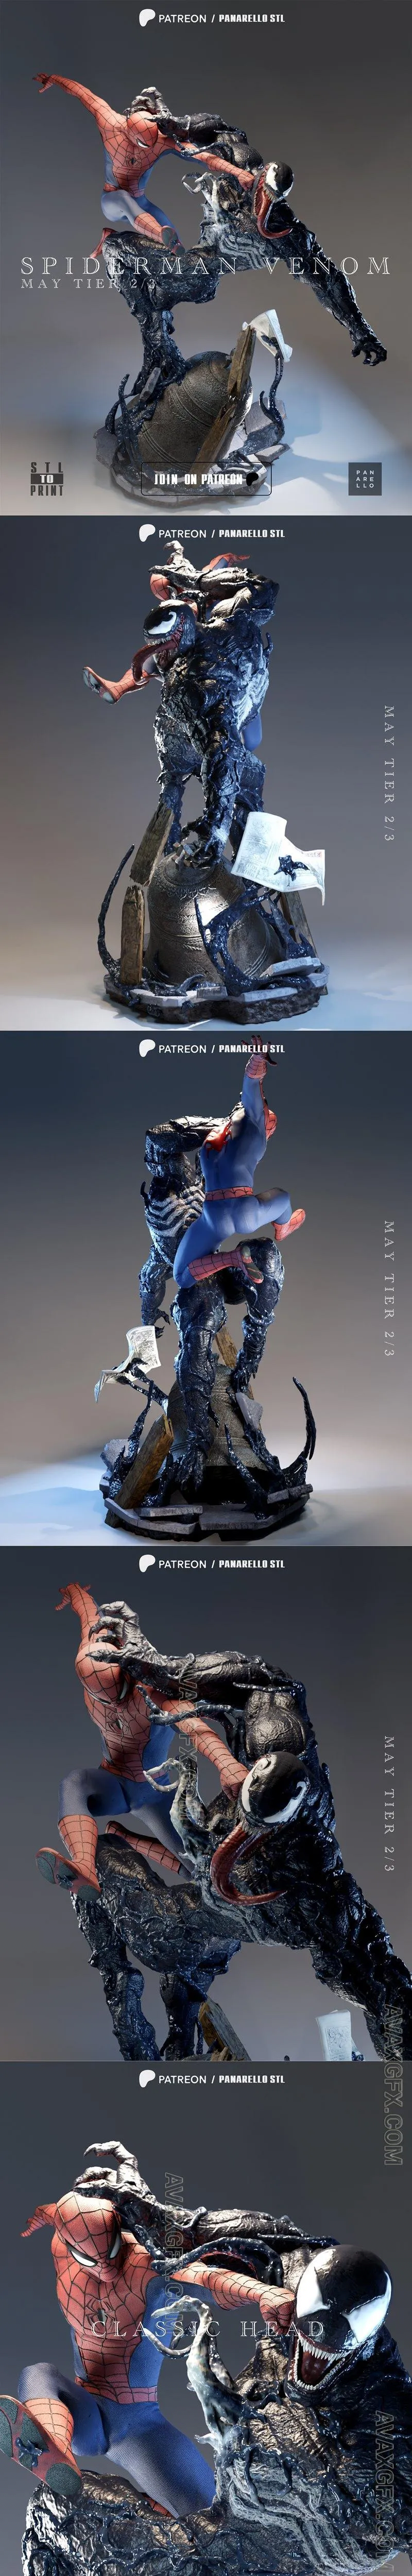 Panarello - Venom Spiderman Diorama - STL 3D Model